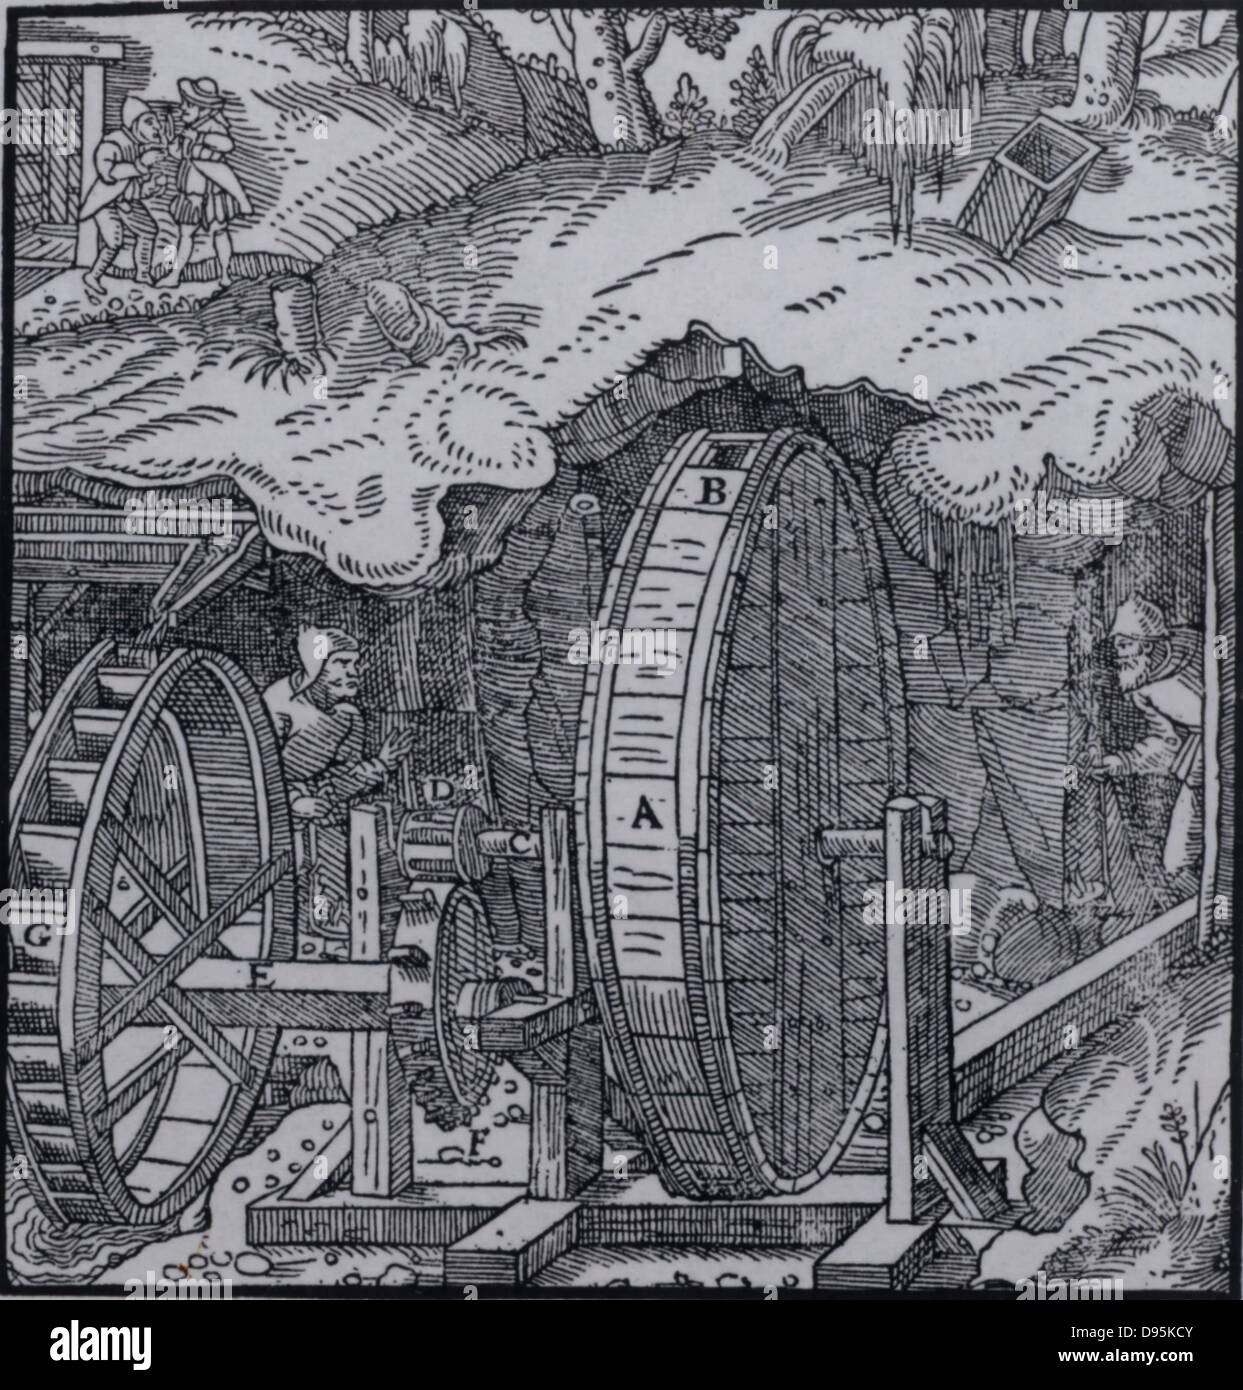 Lüftung eine Mine. Hohle Trommel mit Luftlöcher, B, an gegenüberliegenden Seiten, montiert auf einer Achse, C, zu der die Fans drehen im Inneren der Trommel. Die Achse von wasserrad durch ein Stirnrad und Laterne. Wenn die Achse gedreht, die Fans drehen im Inneren der Trommel wäre Luft in ein Loch und aus der gegenüber einem Saugen, die Einrichtung ein Luftstrom. Von "De re Metallica", die von Agricola, Pseudonym von Georg Bauer (Basel, 1556). Holzschnitt. Stockfoto